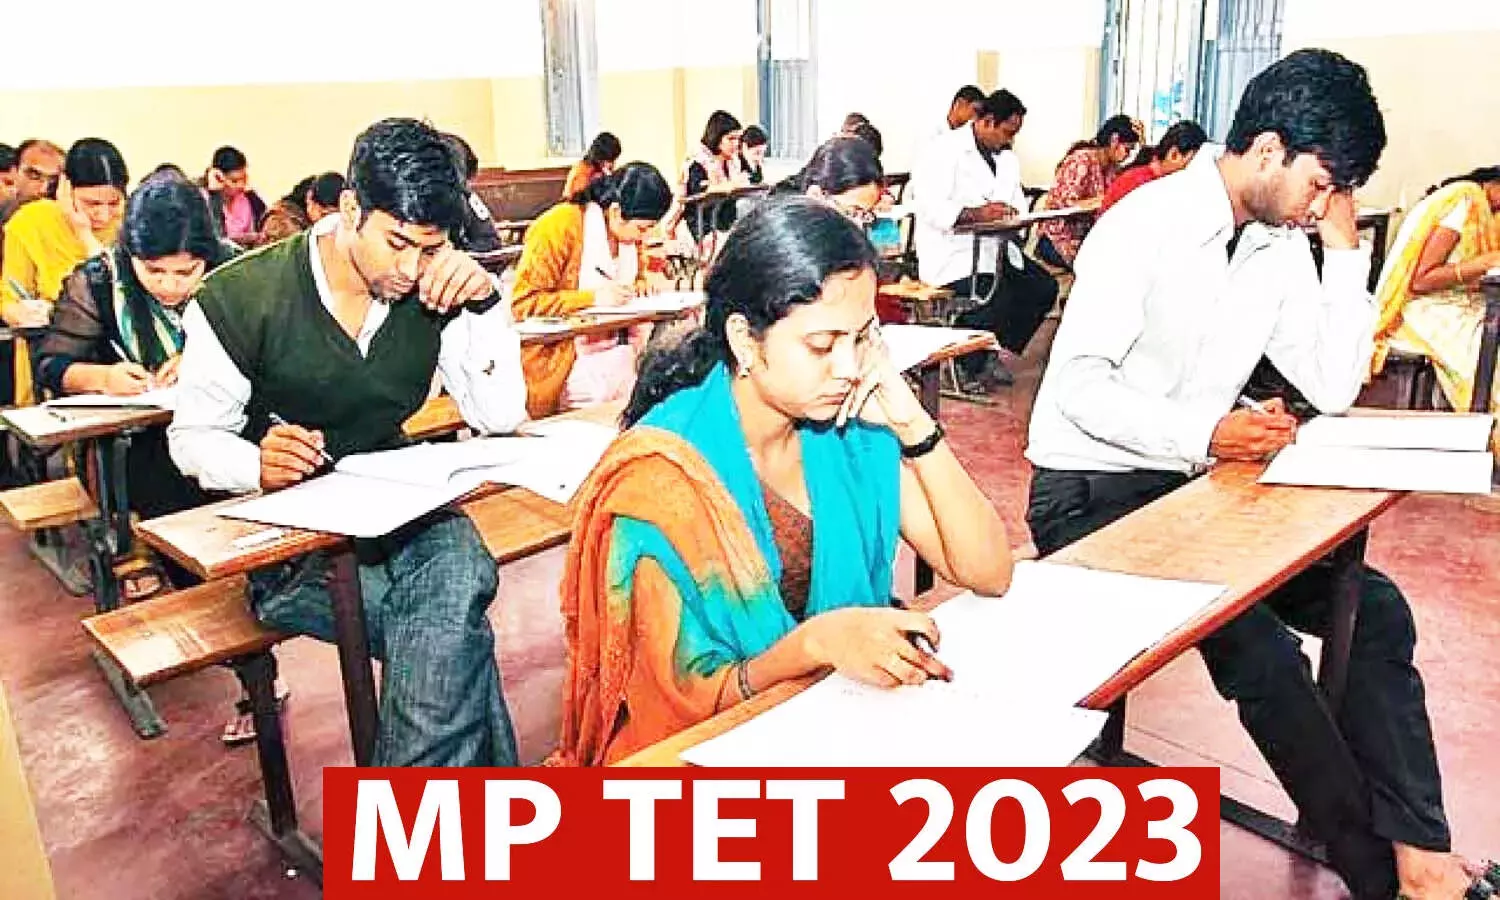 MP TET 2023: मध्यप्रदेश शिक्षक पात्रता परीक्षा के लिए एडमिट कार्ड जारी, डाउनलोड करने की यह है लिंक esb.mp.gov.in